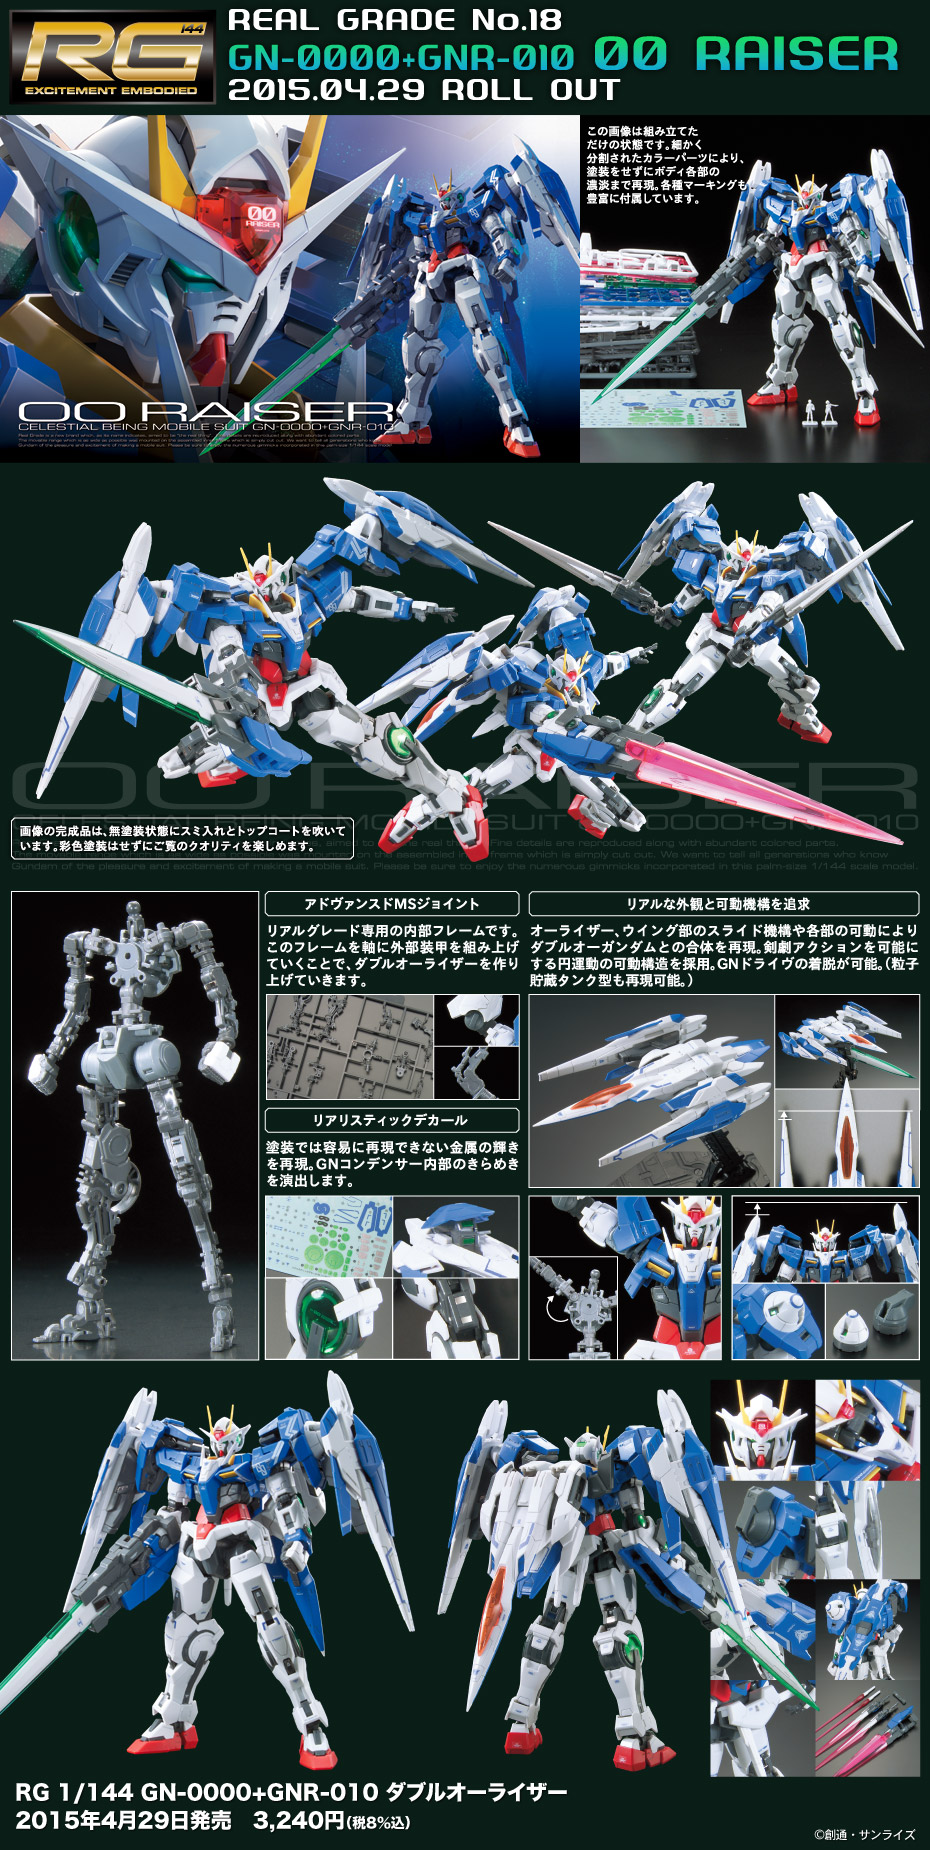 RG 1/144 GN-0000+GNR-010 00 Gundam Raiser 2nd UPDATE Box Art, Full 